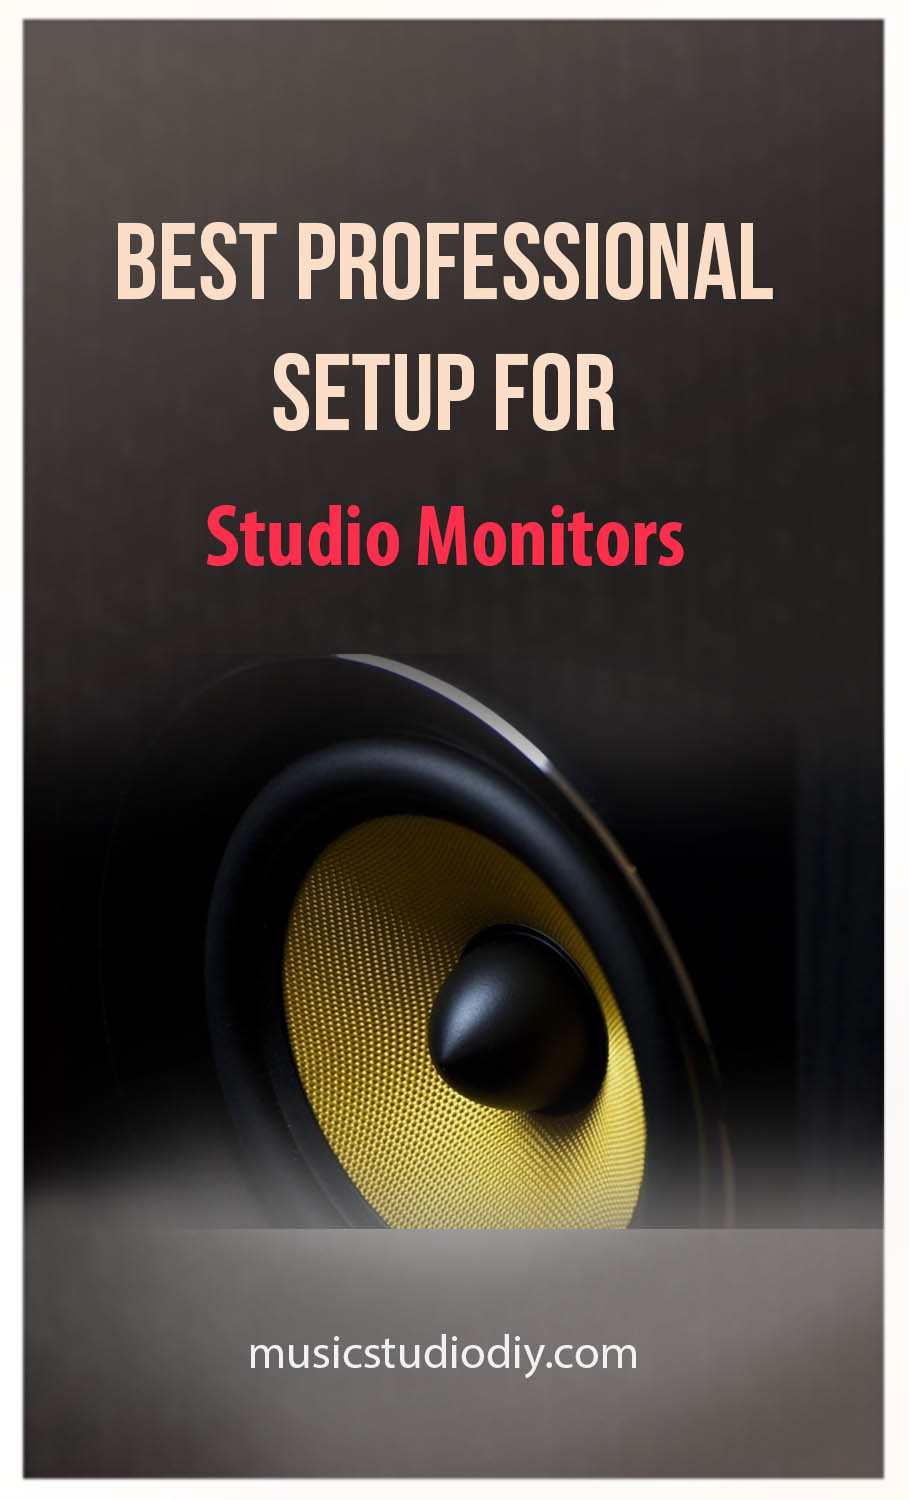 Best Professional Setup for Studio Monitors